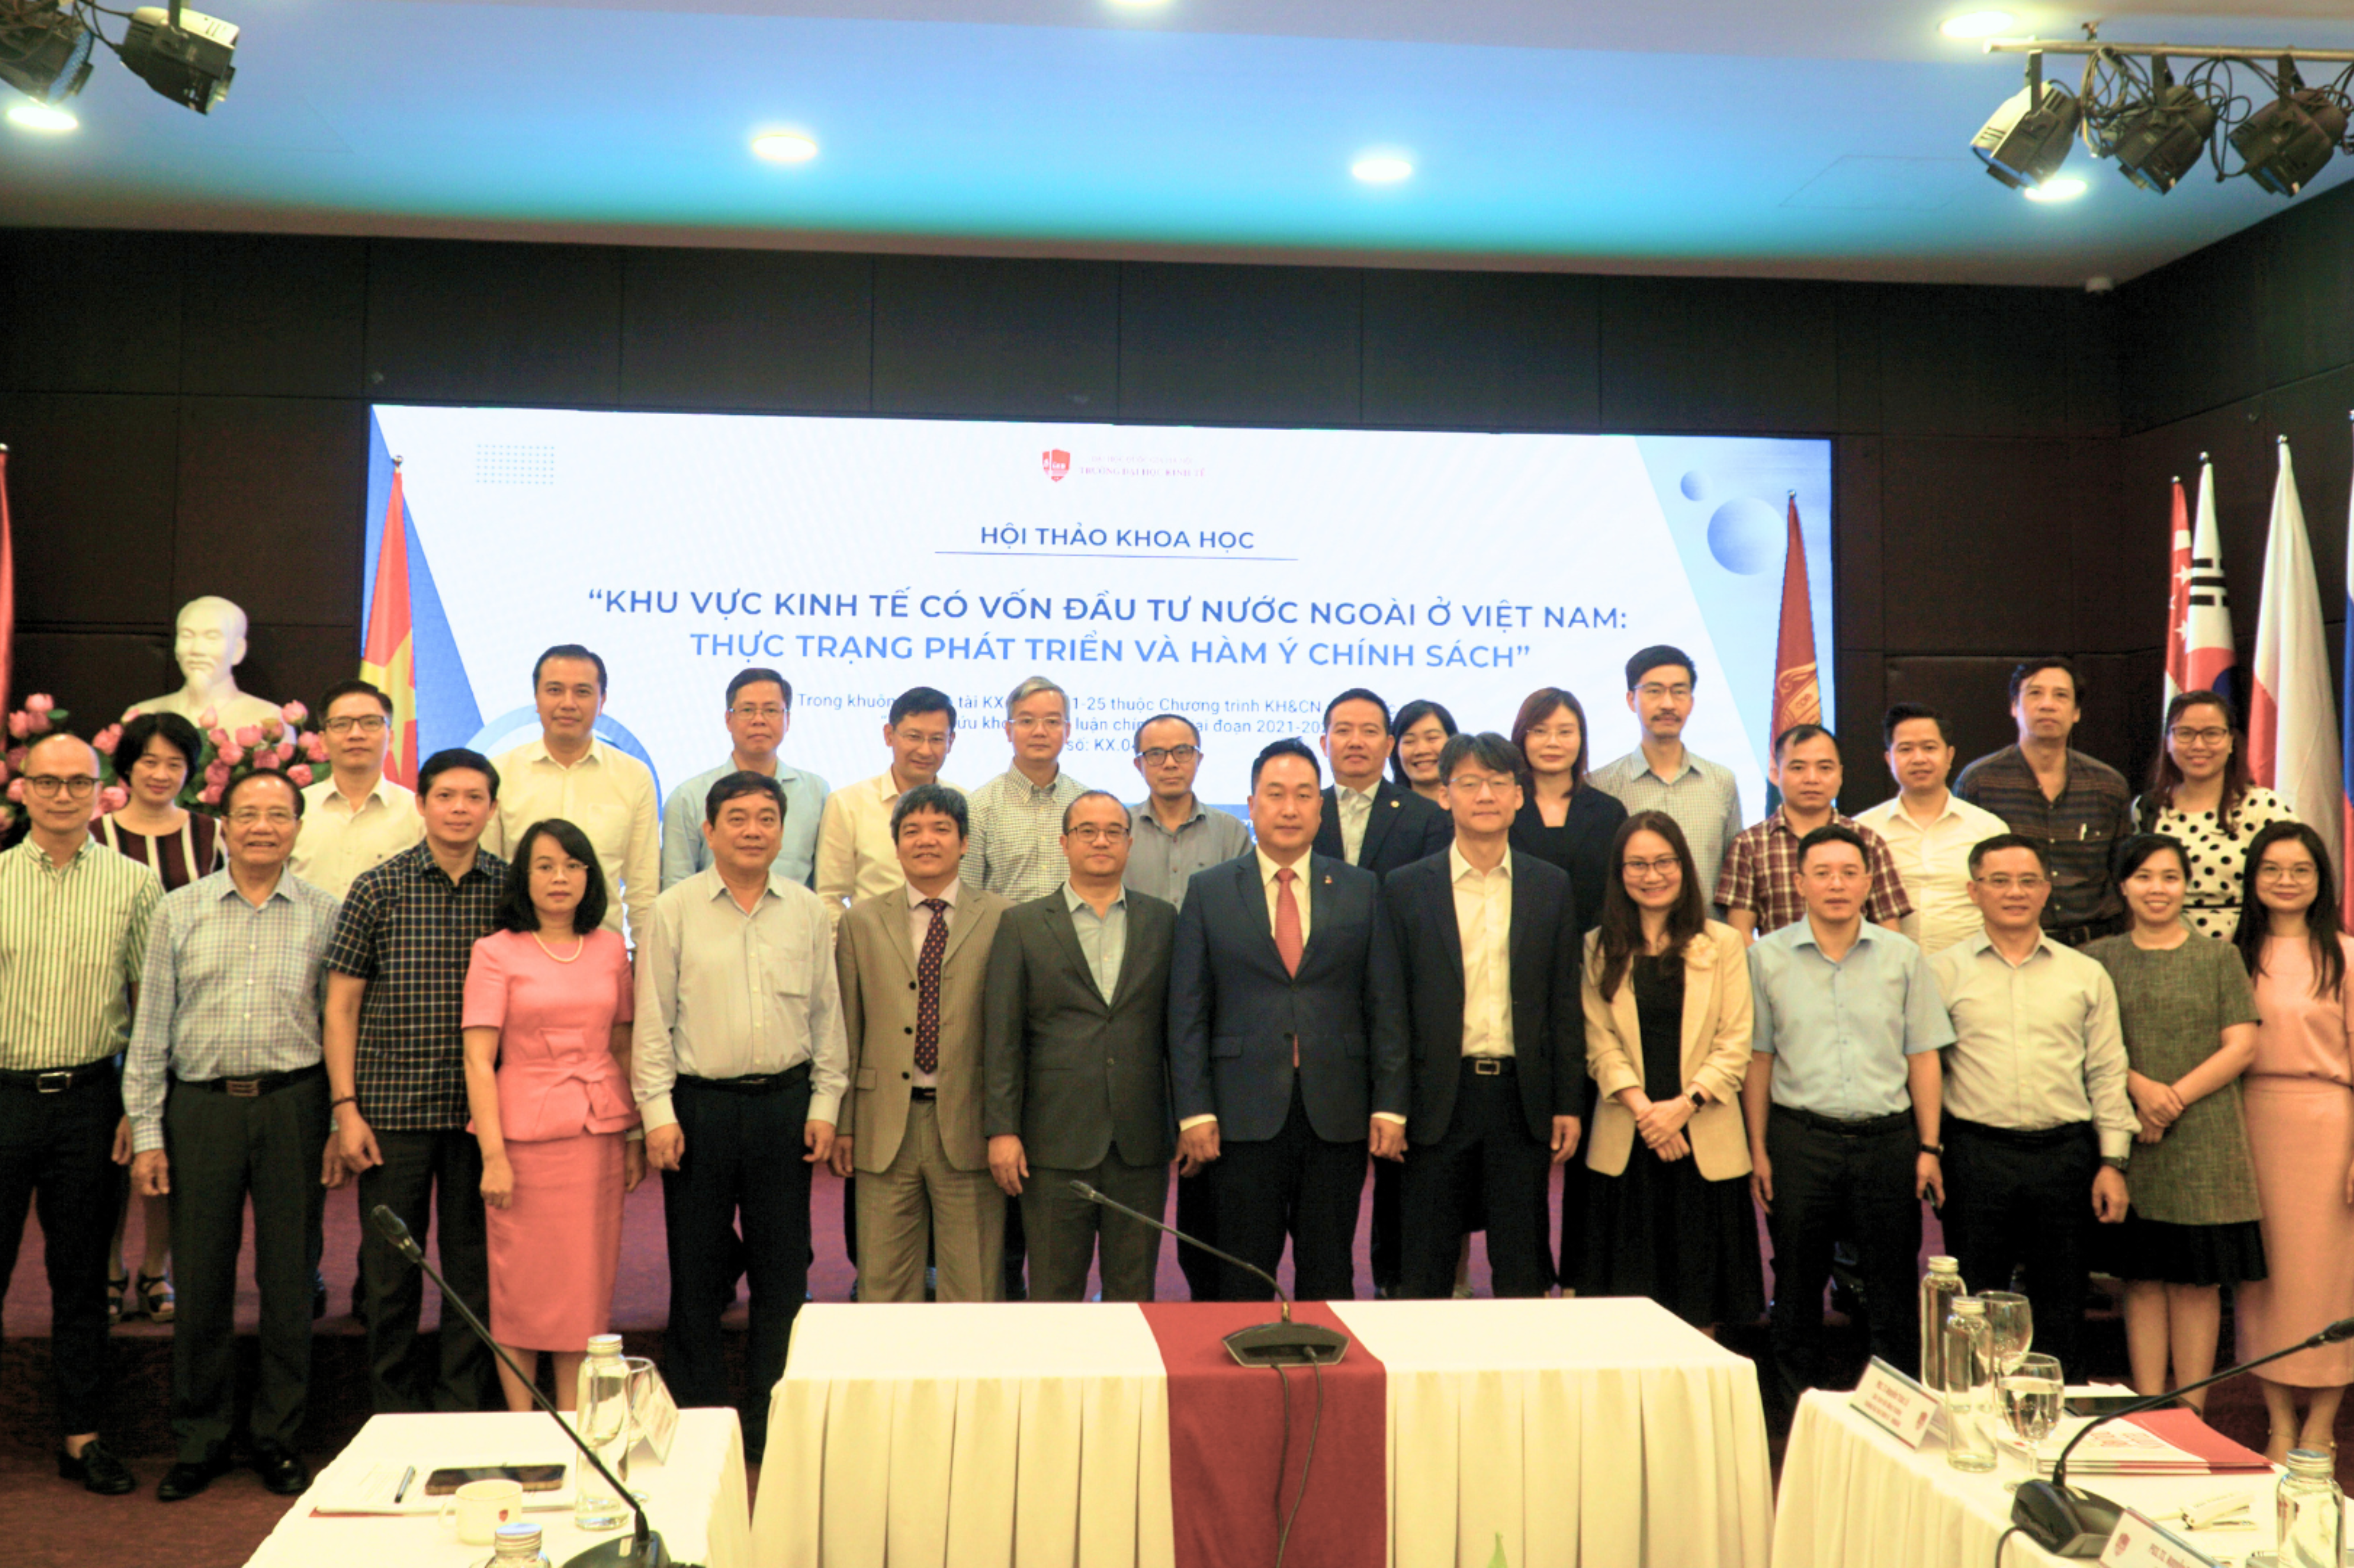 Hội thảo khoa học “Khu vực kinh tế có vốn đầu tư nước ngoài ở Việt Nam: Thực trạng phát triển và hàm ý chính sách”